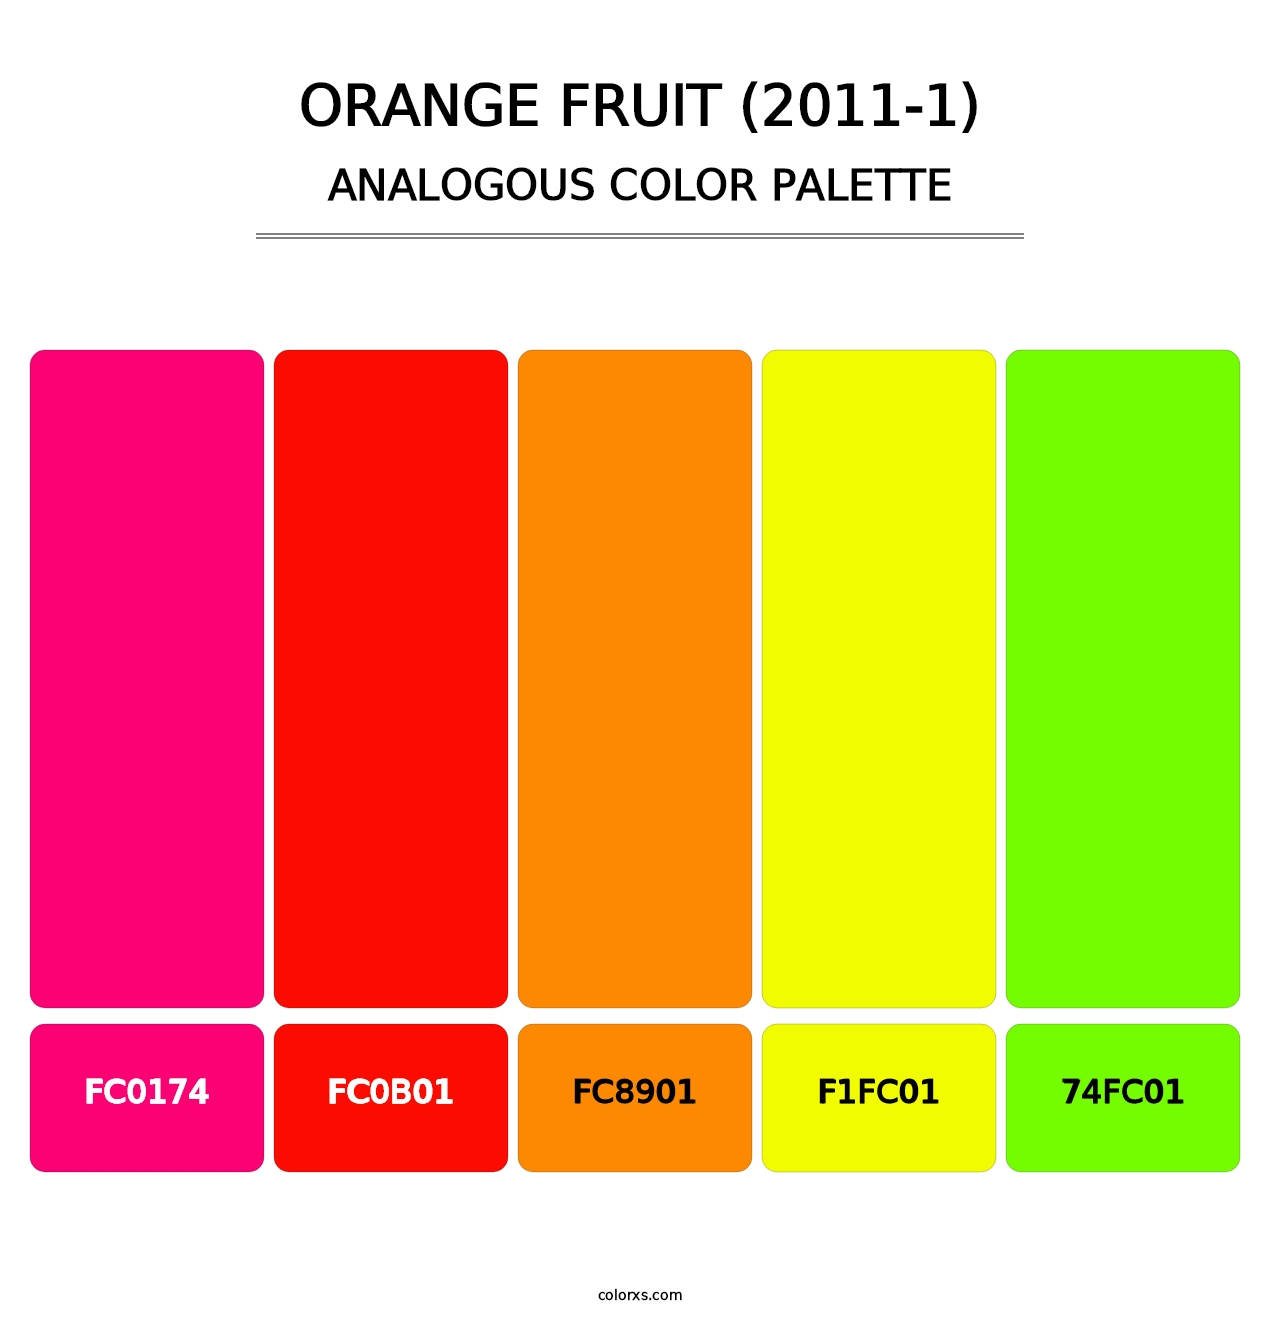 Orange Fruit (2011-1) - Analogous Color Palette